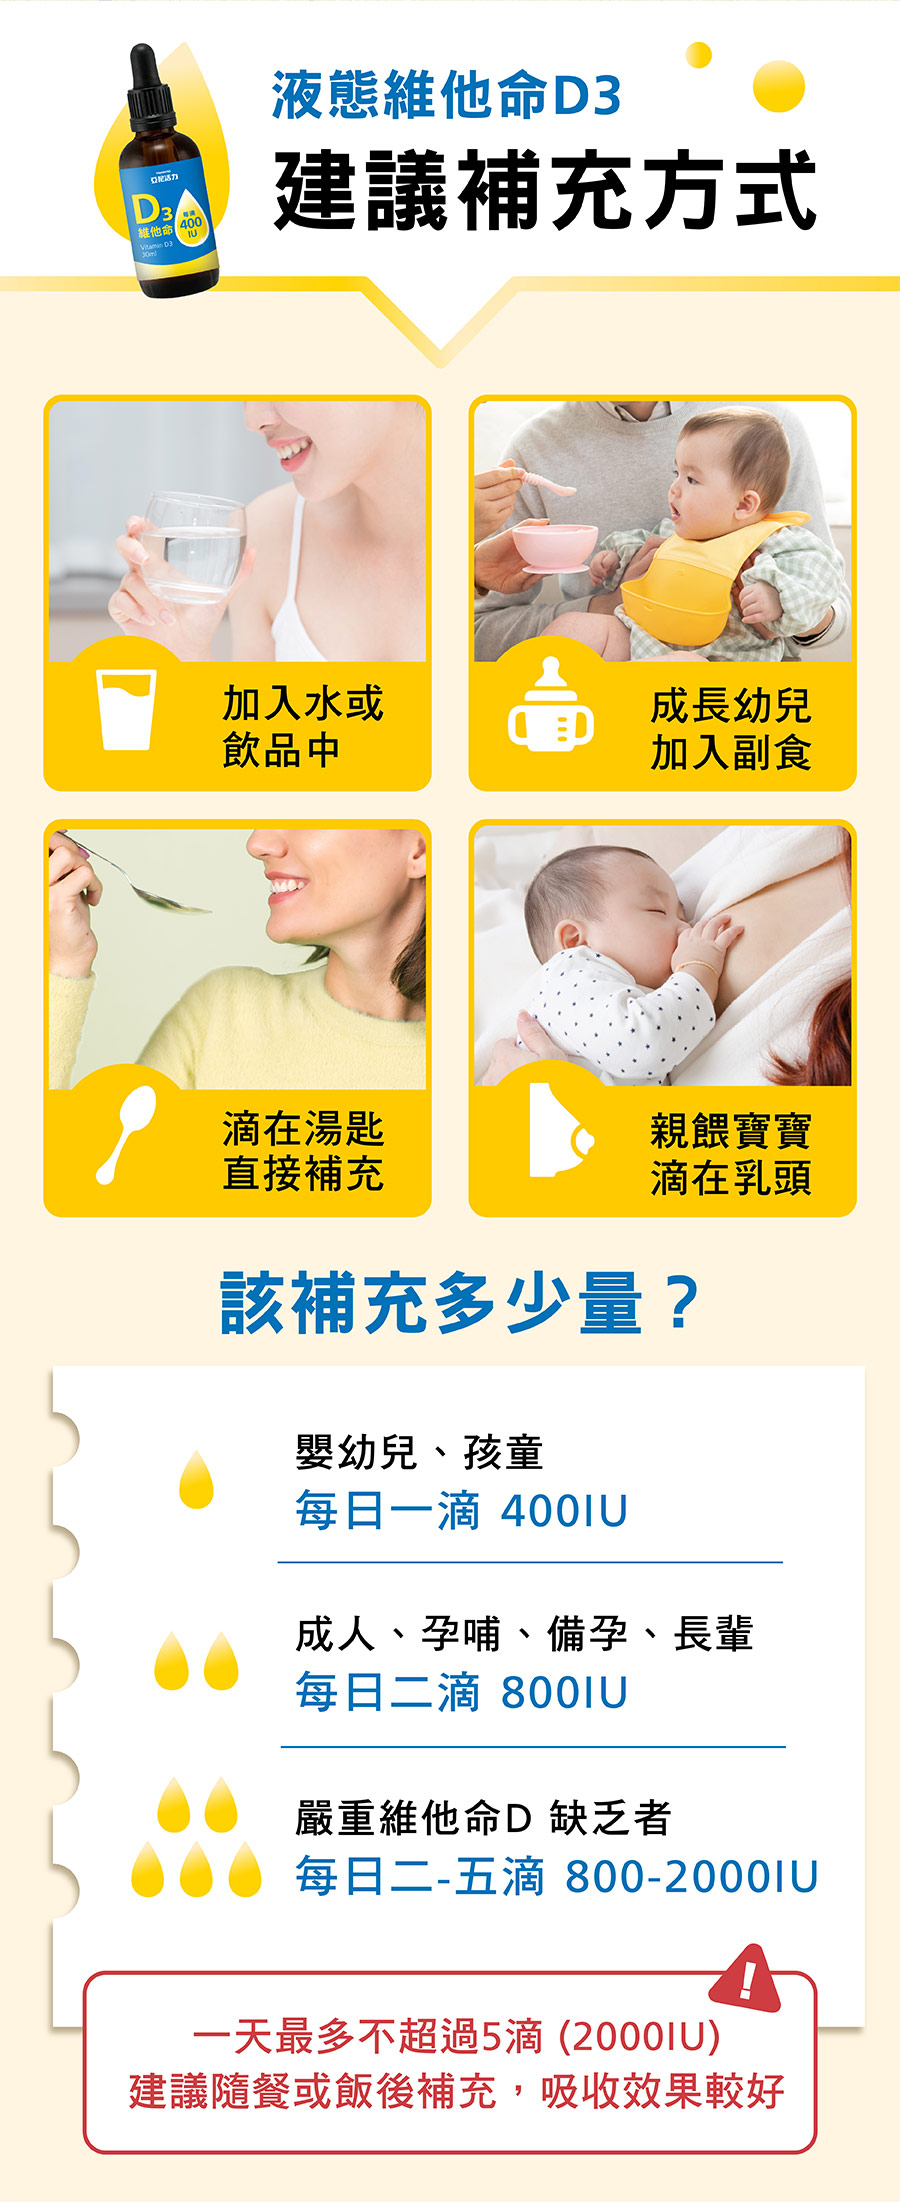 液態維他命D3加入水或飲品中、幼兒副食品，哺乳媽媽親餵時滴於乳頭讓寶寶食用、一般成人也可以直接滴在湯匙上作補充